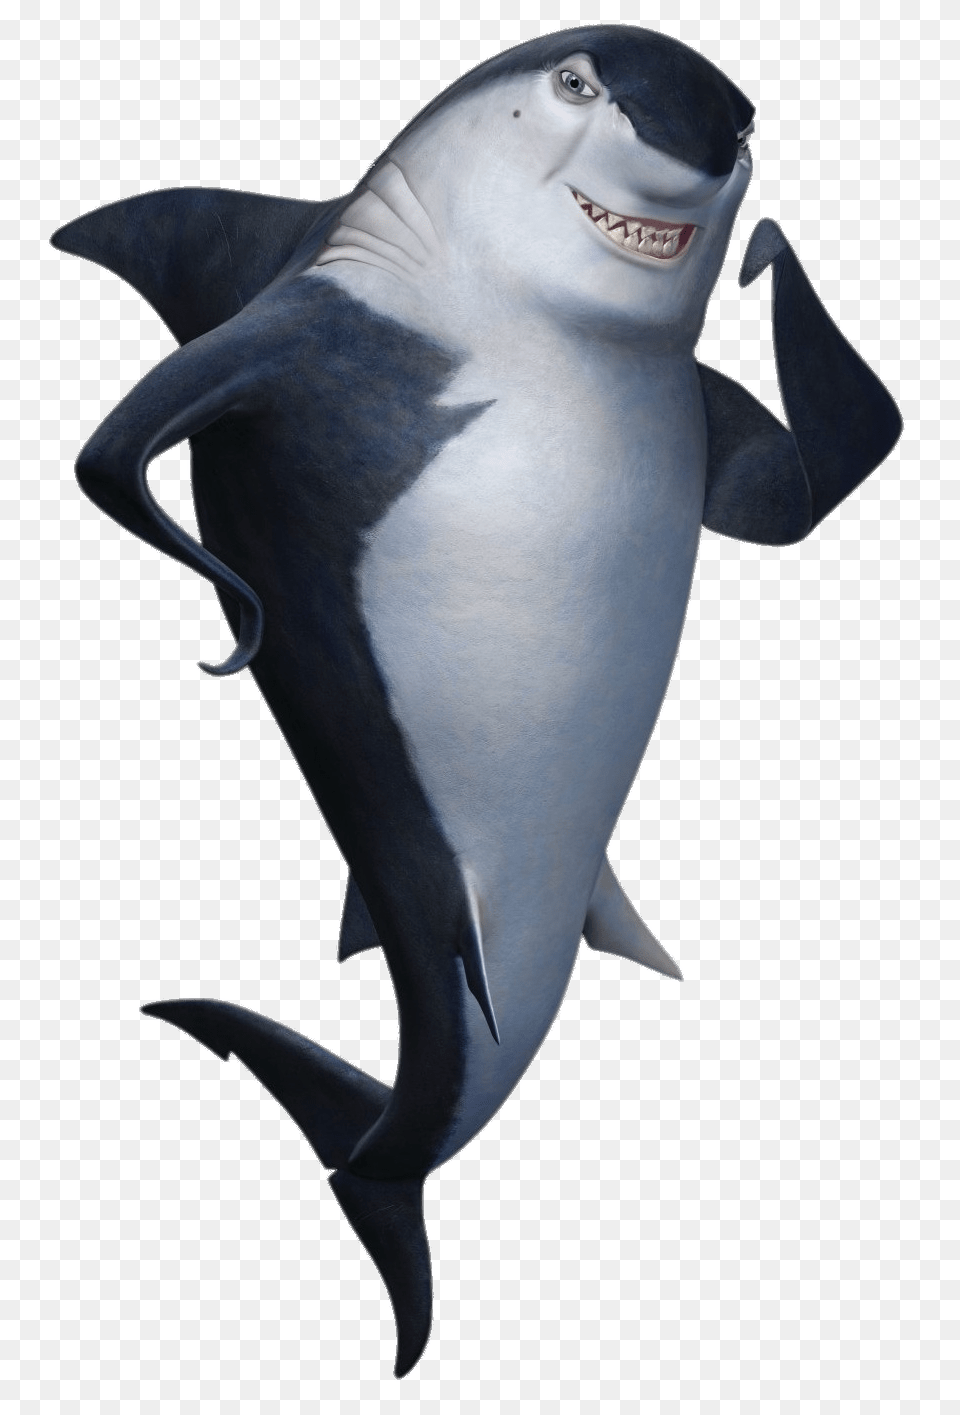 Shark Tale Character Don Lino The Shark, Animal, Fish, Sea Life, Mammal Png Image